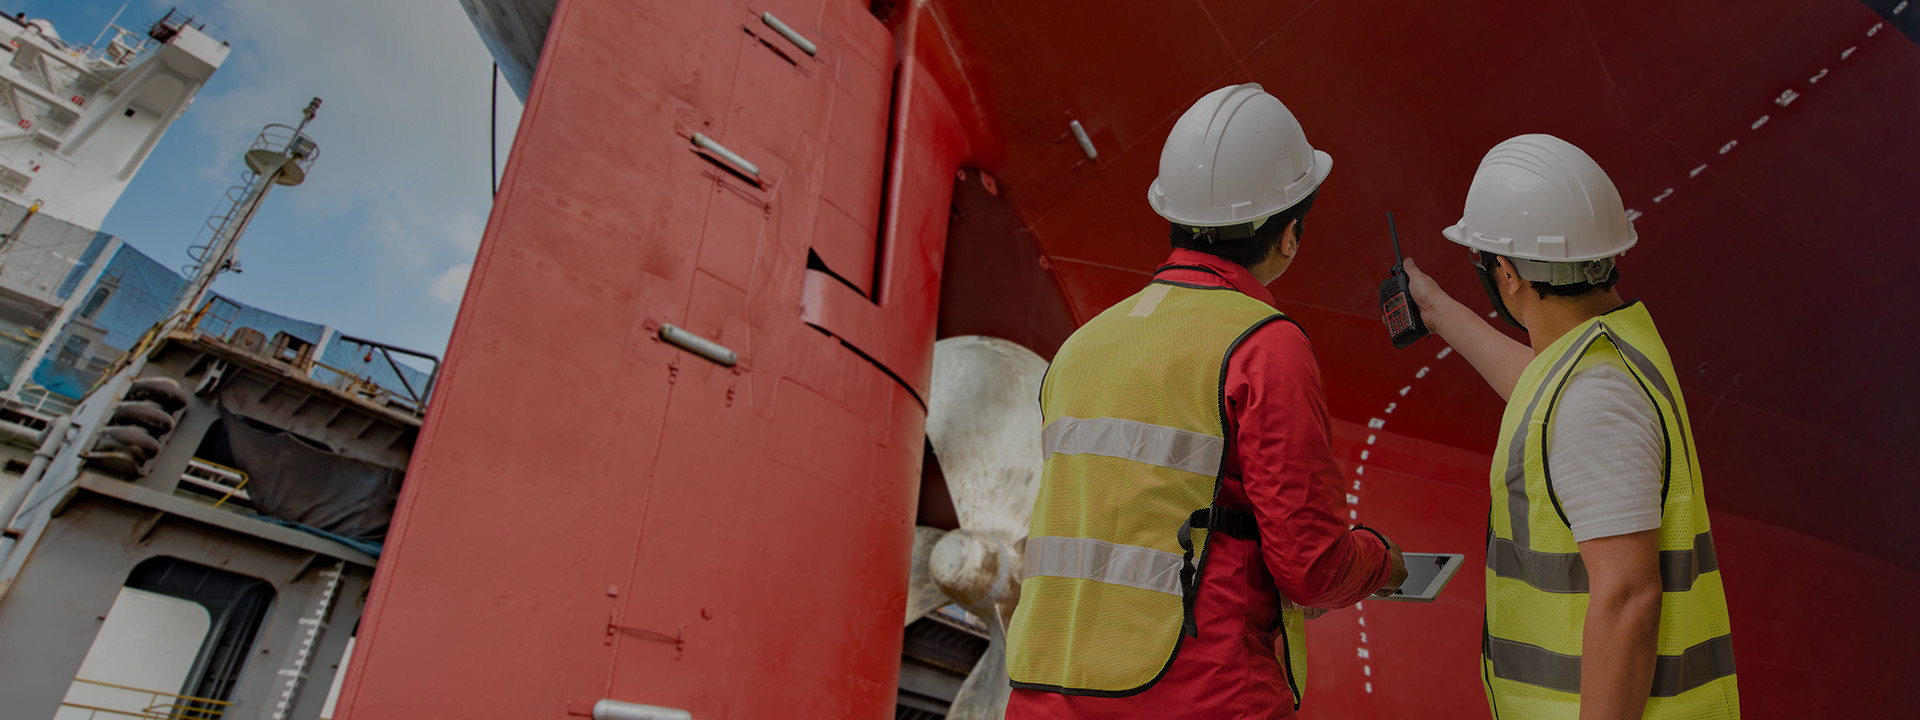 船舶管理制度的有效落實，確保船隊安全和檢查順利